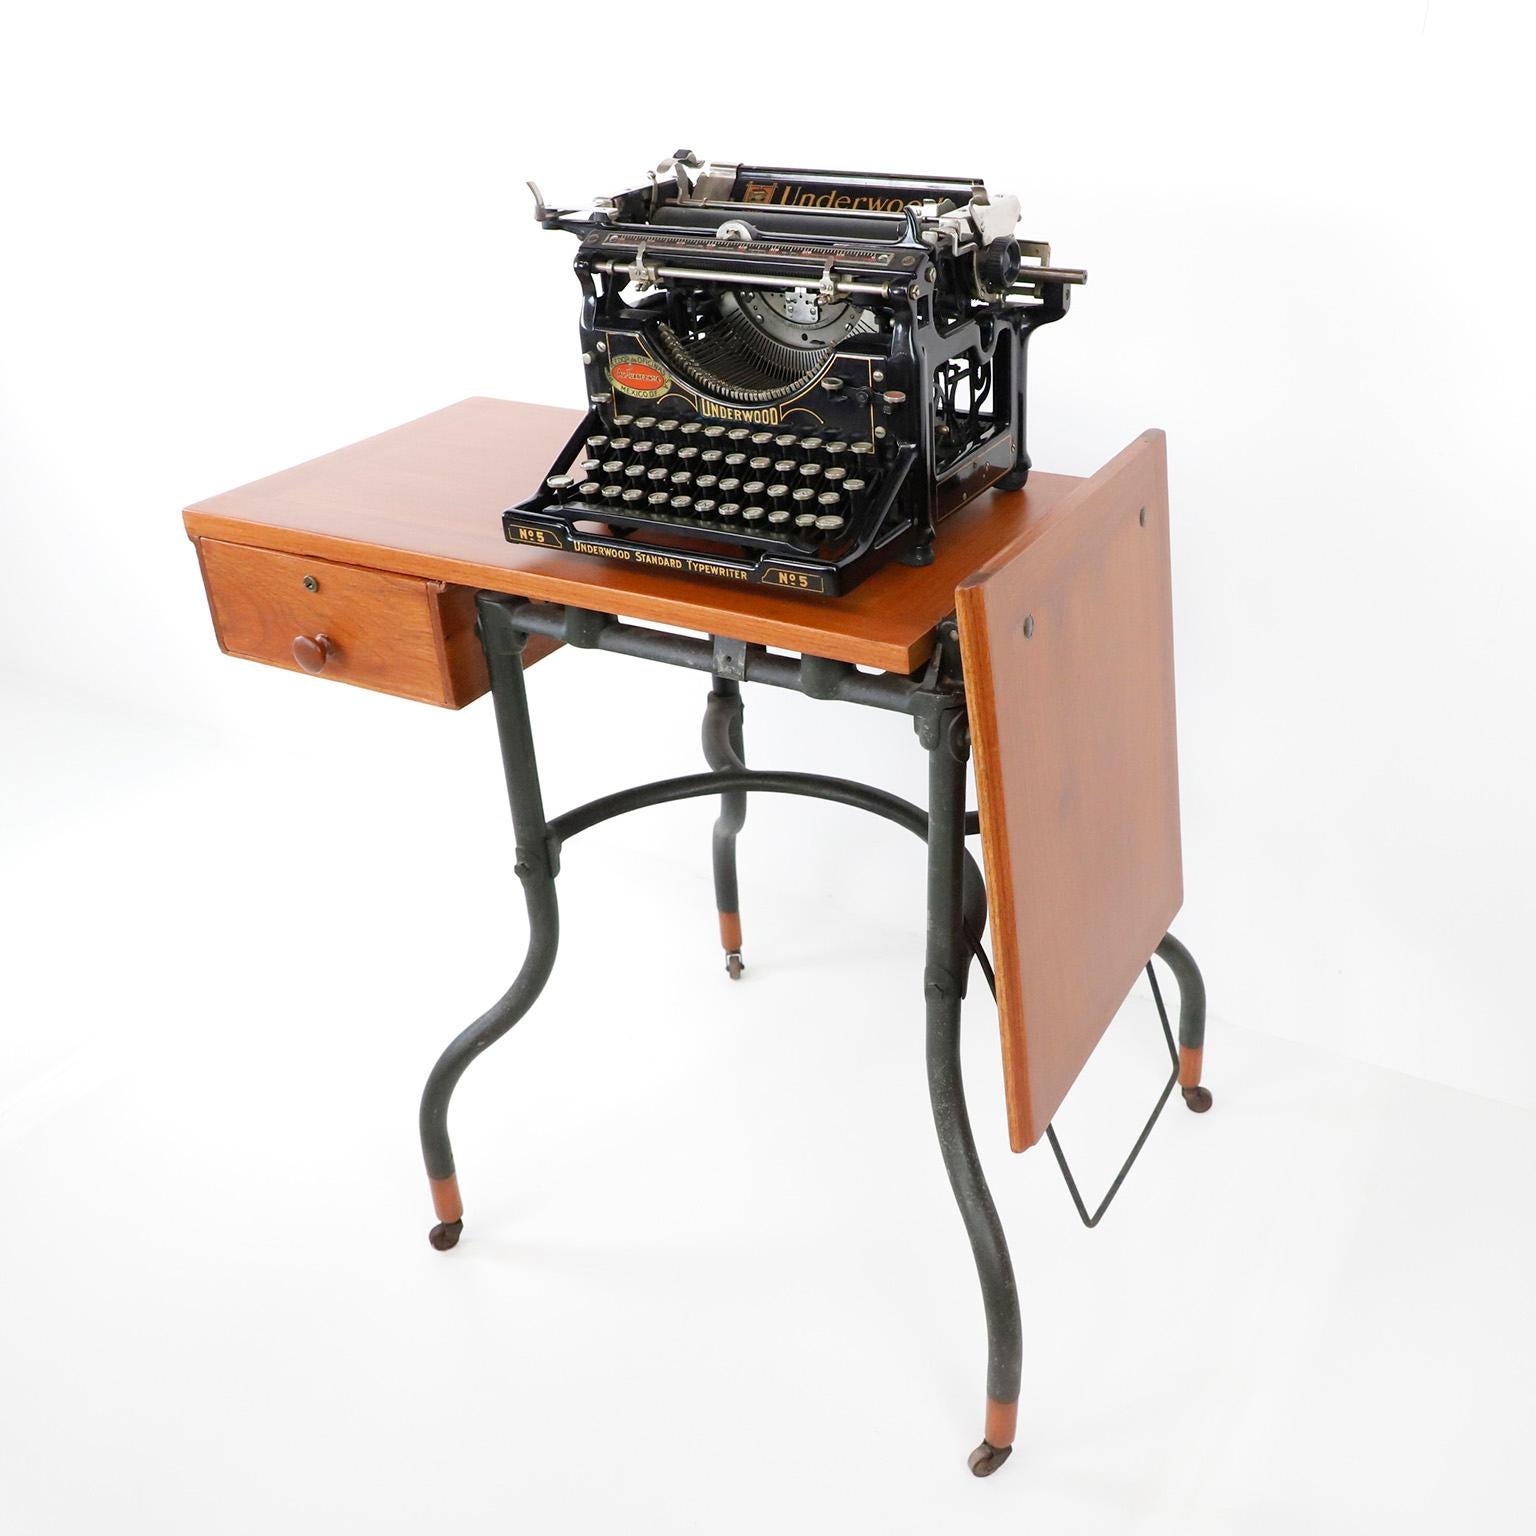 1930 typewriter table